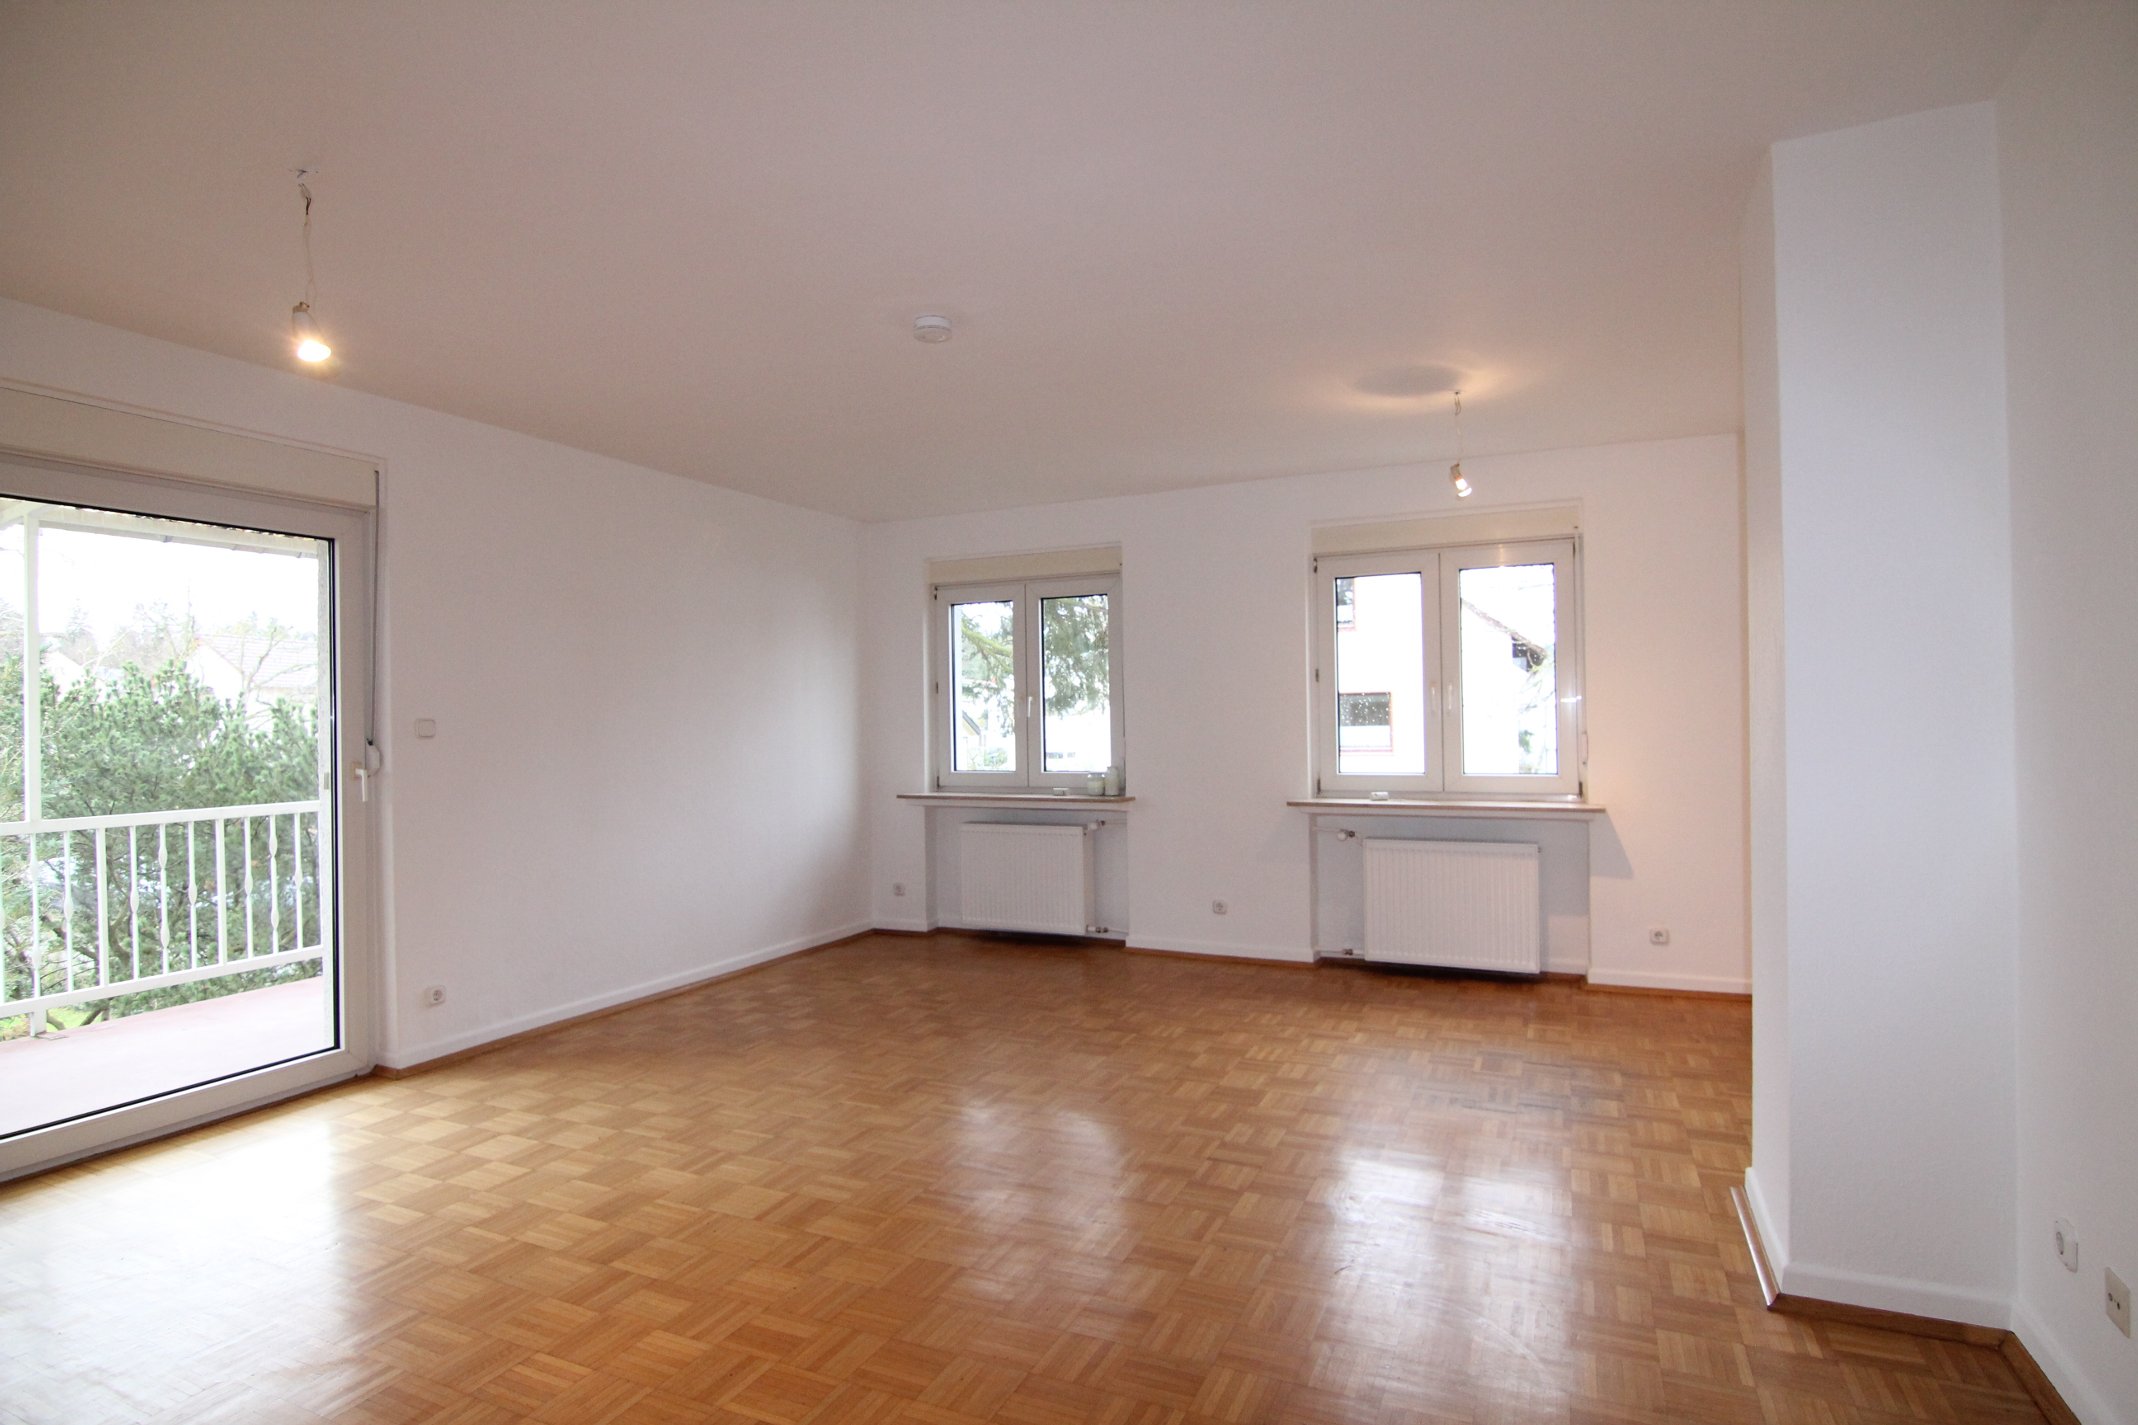 Schöne 2 Zimmer Wohnung mit Balkon und neuer Einbauküche in bester Wohnlage! bei Degenhardt Immobilien